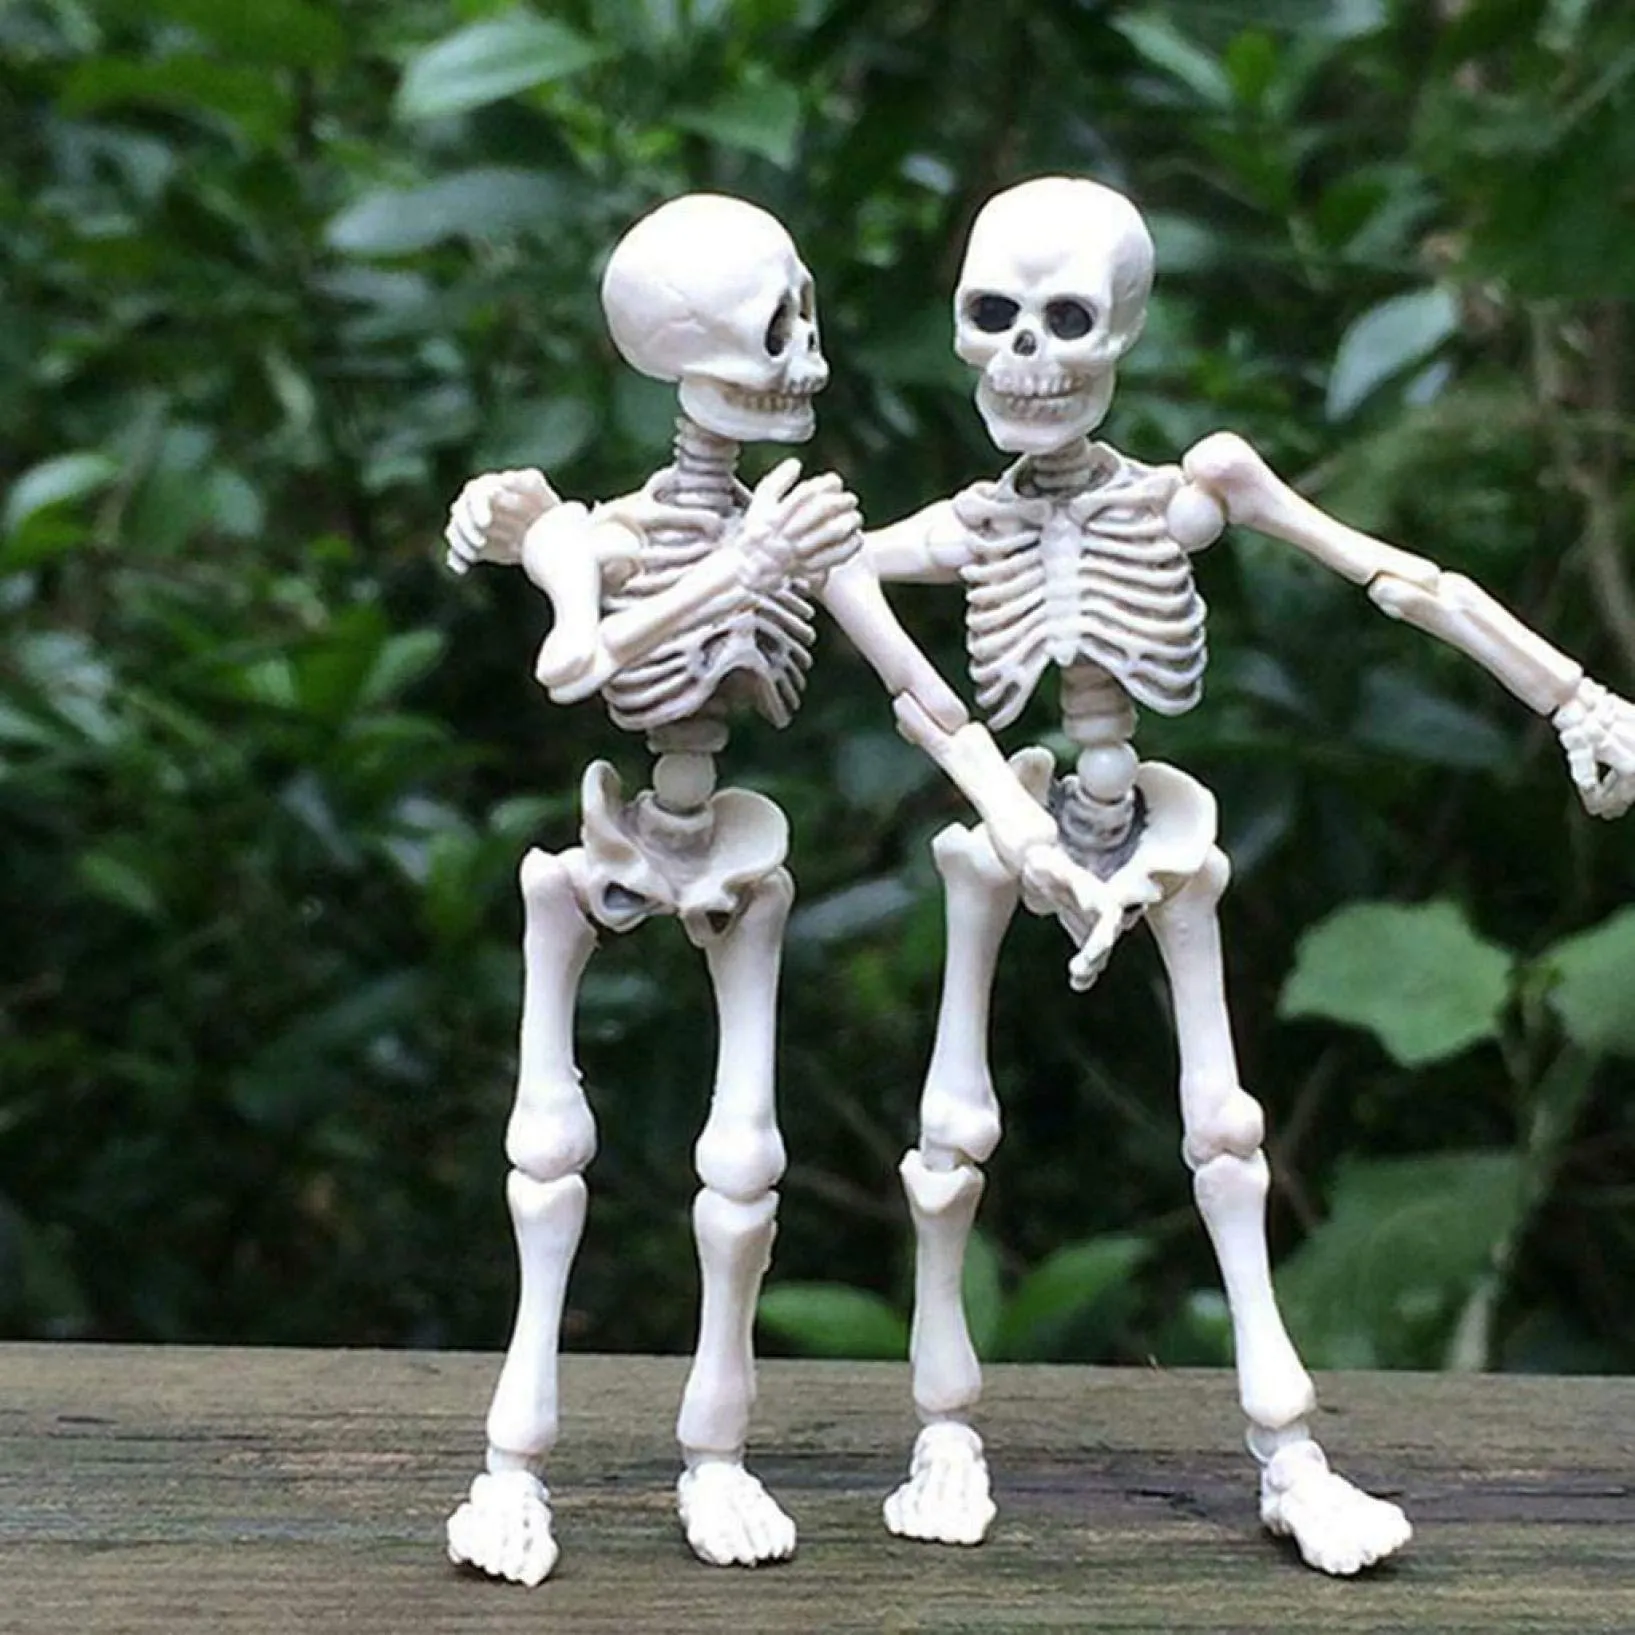 Amazon.com: Qonioi 1 pieza de esqueleto móvil de Halloween, modelo humano,  calavera de cuerpo completo, mini figura de juguete de 3.54 pulgadas/3.5  in, decoraciones de calavera de cuerpo completo realista de imitación